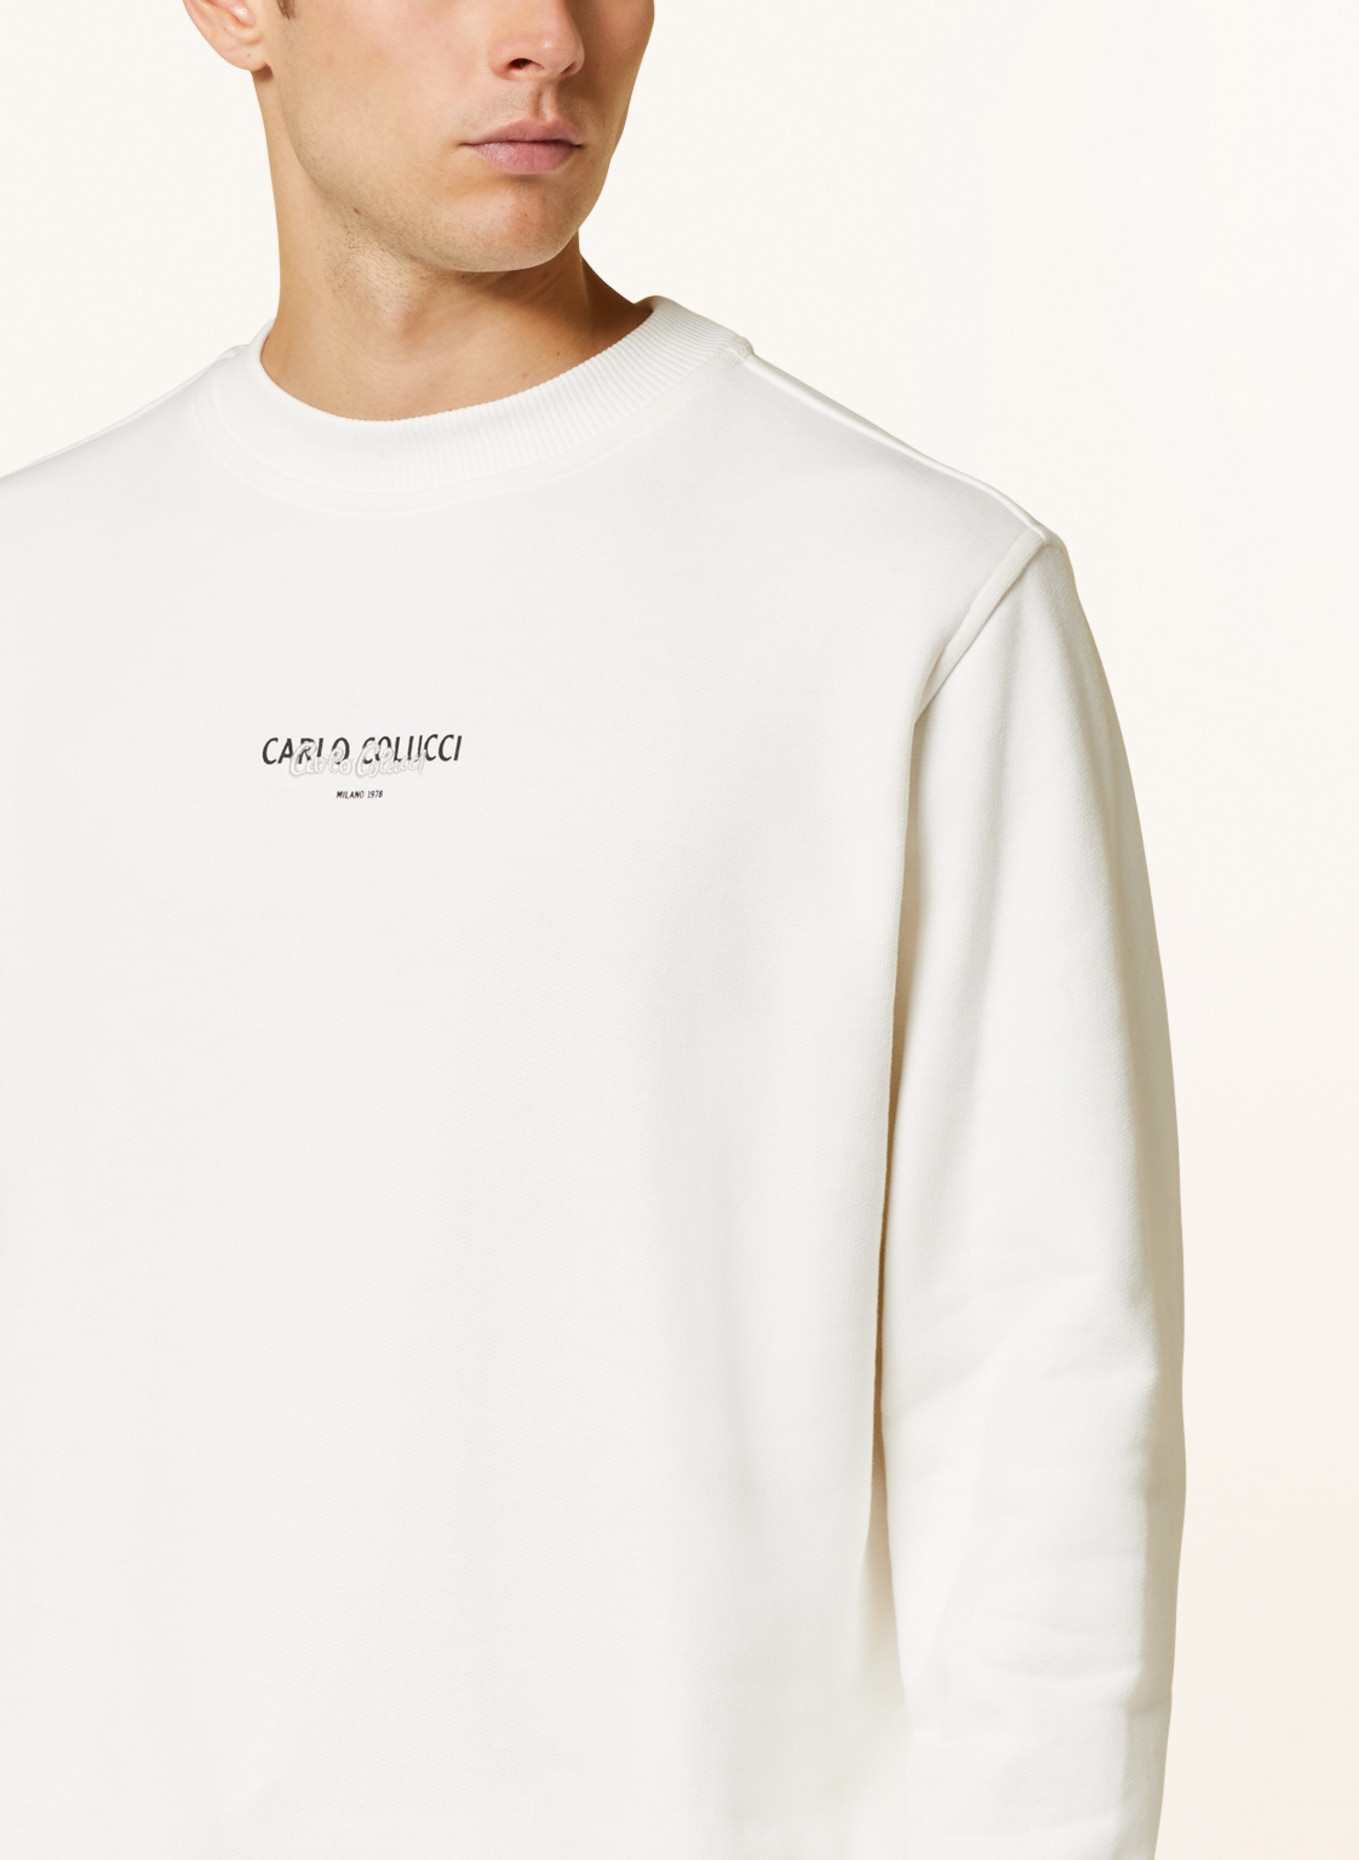 CARLO COLUCCI Sweatshirt, Color: CREAM (Image 4)